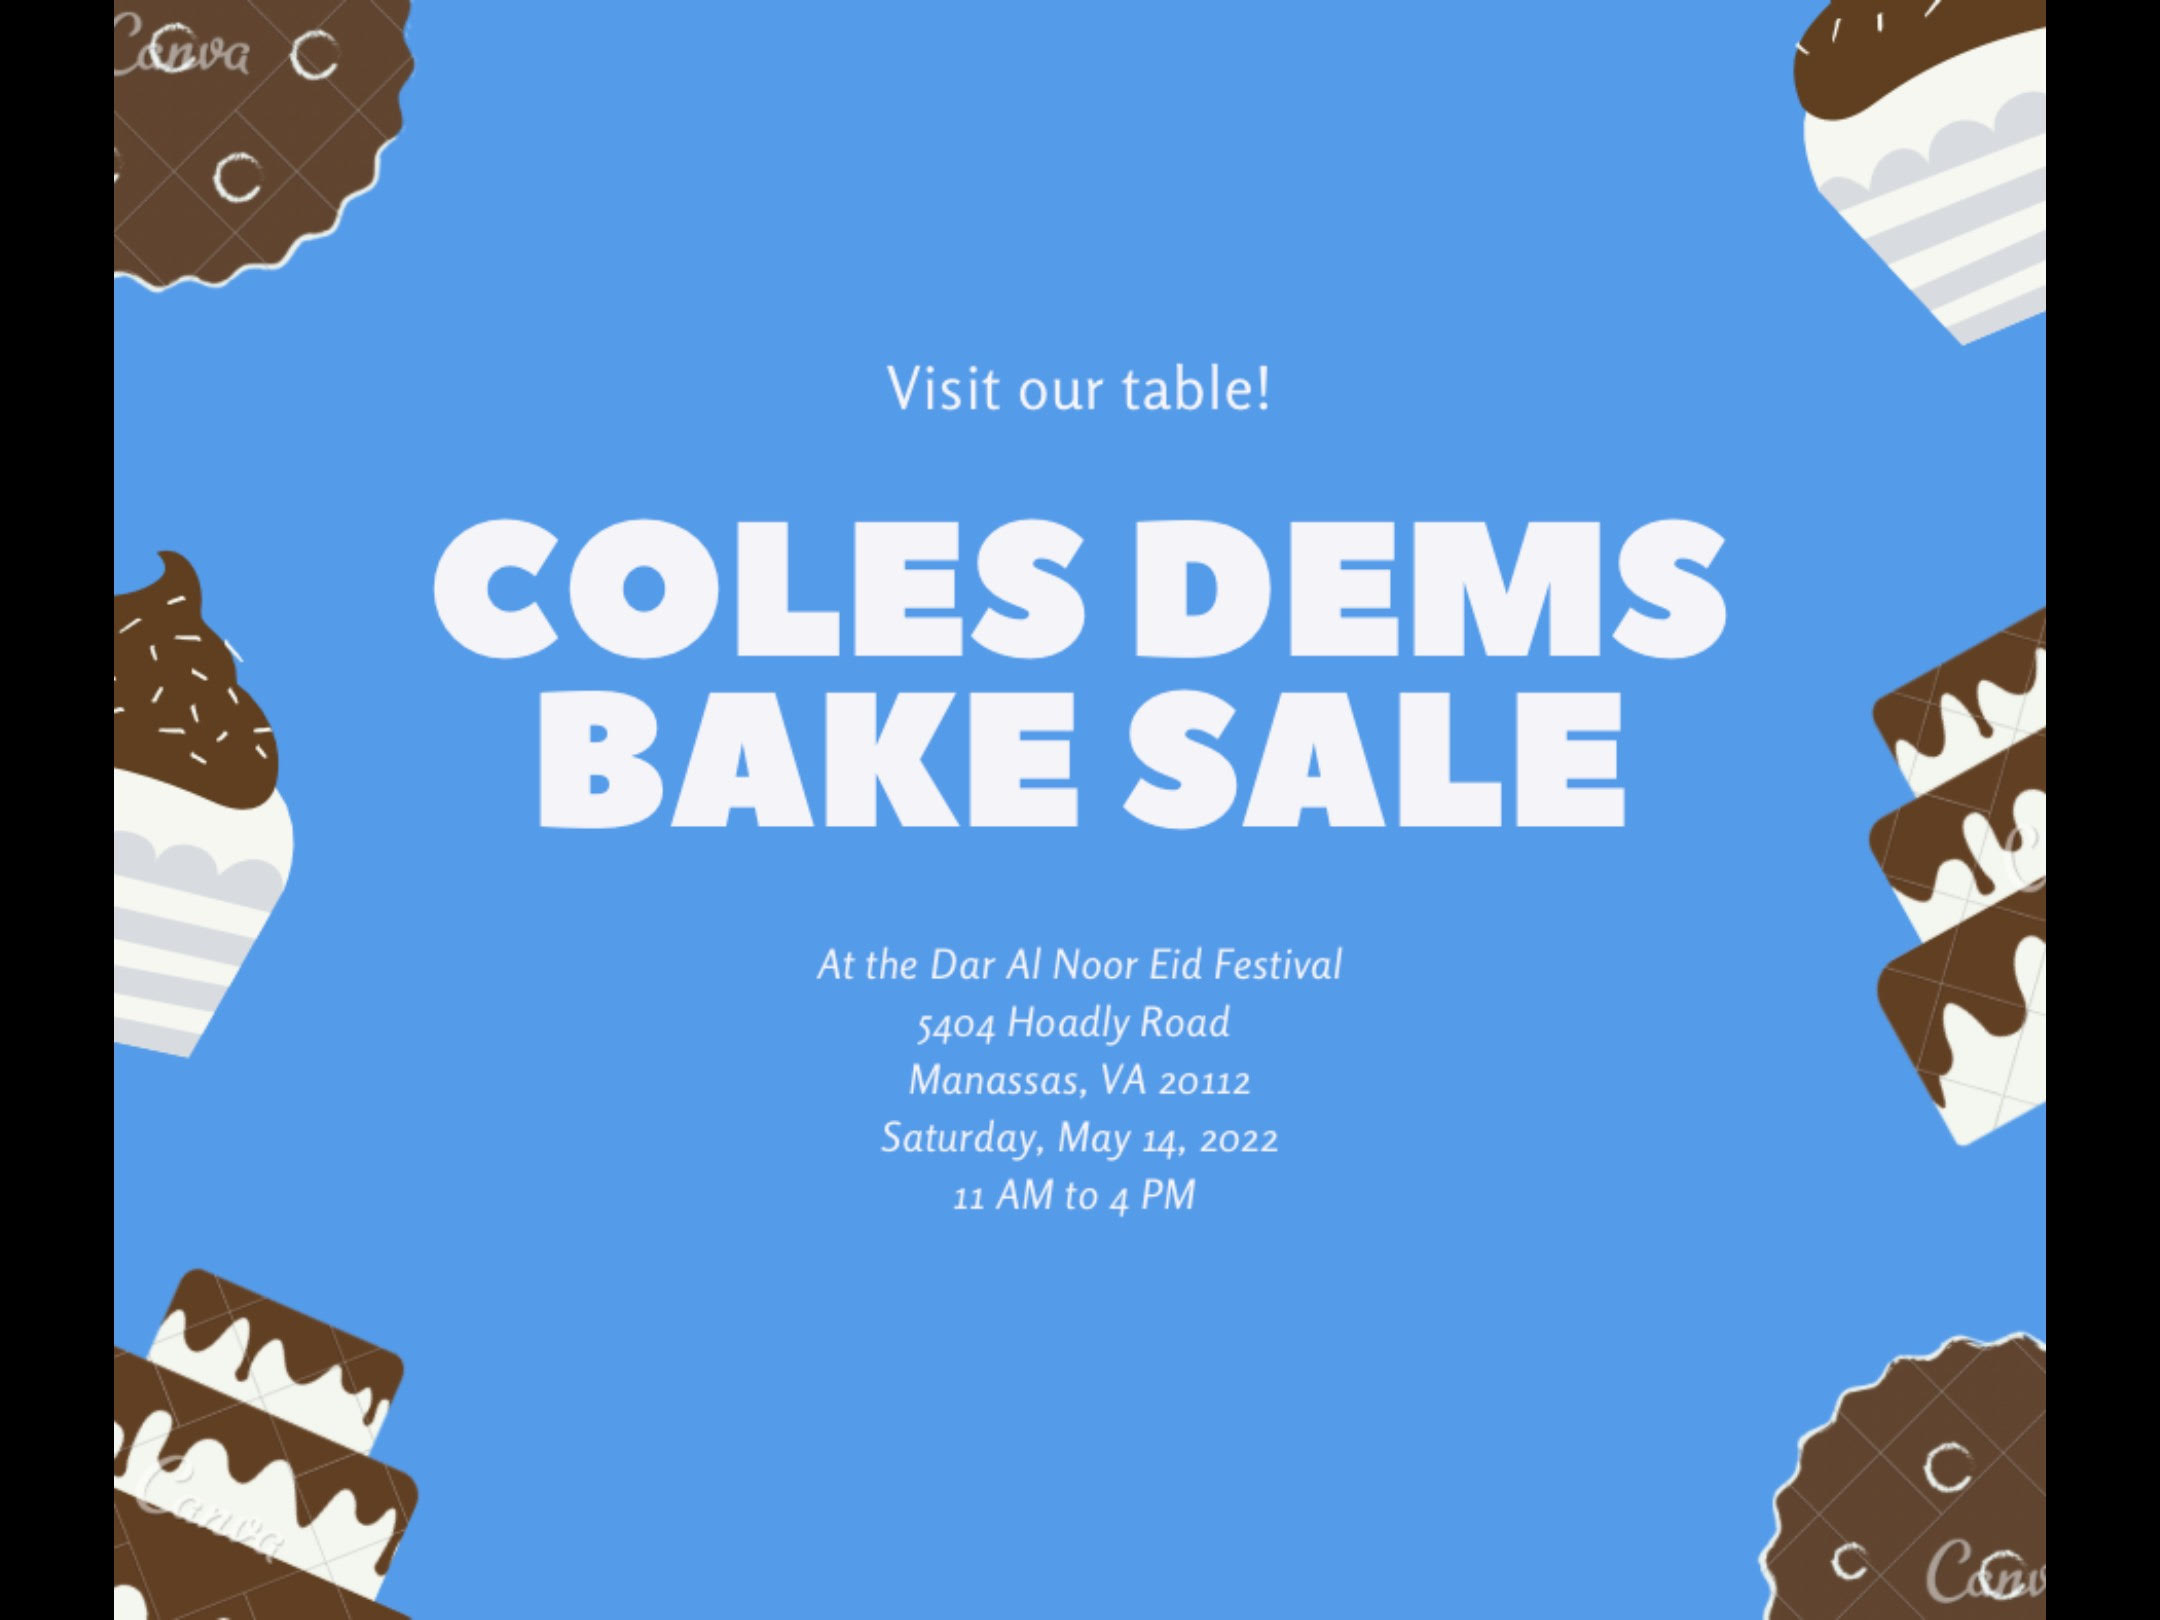 Coles Dems Bake Sale